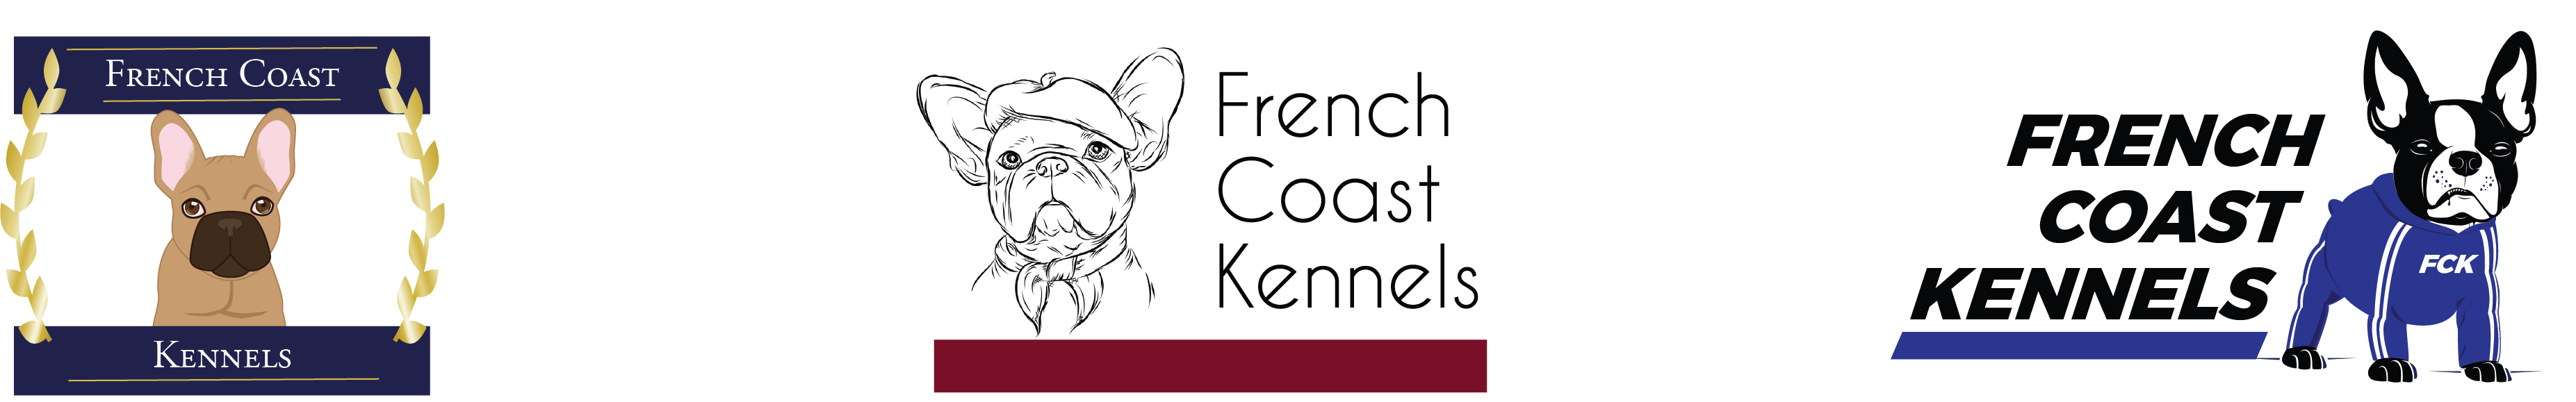 French Coast Kennels logo design